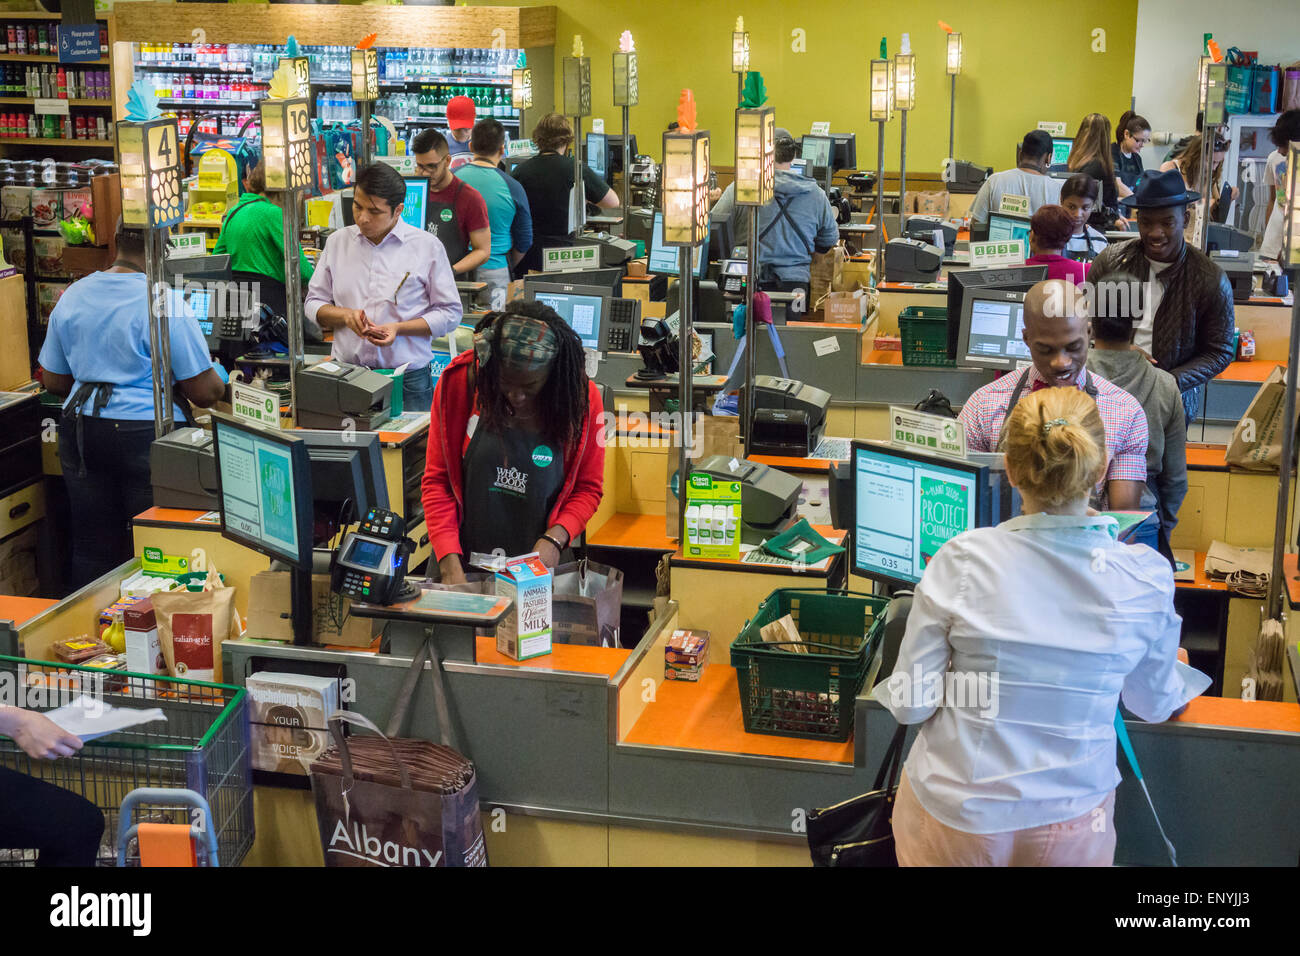 L'estremità anteriore del Whole Foods supermercato in Union Square a New York giovedì 7 maggio 2015. Whole Foods ha annunciato che sarà aperto a basso prezzo negozi accattivanti per millennial. La millenaria mercati, come ancora senza nome, sono pianificati per aprire nel 2016. (© Richard B. Levine) Foto Stock